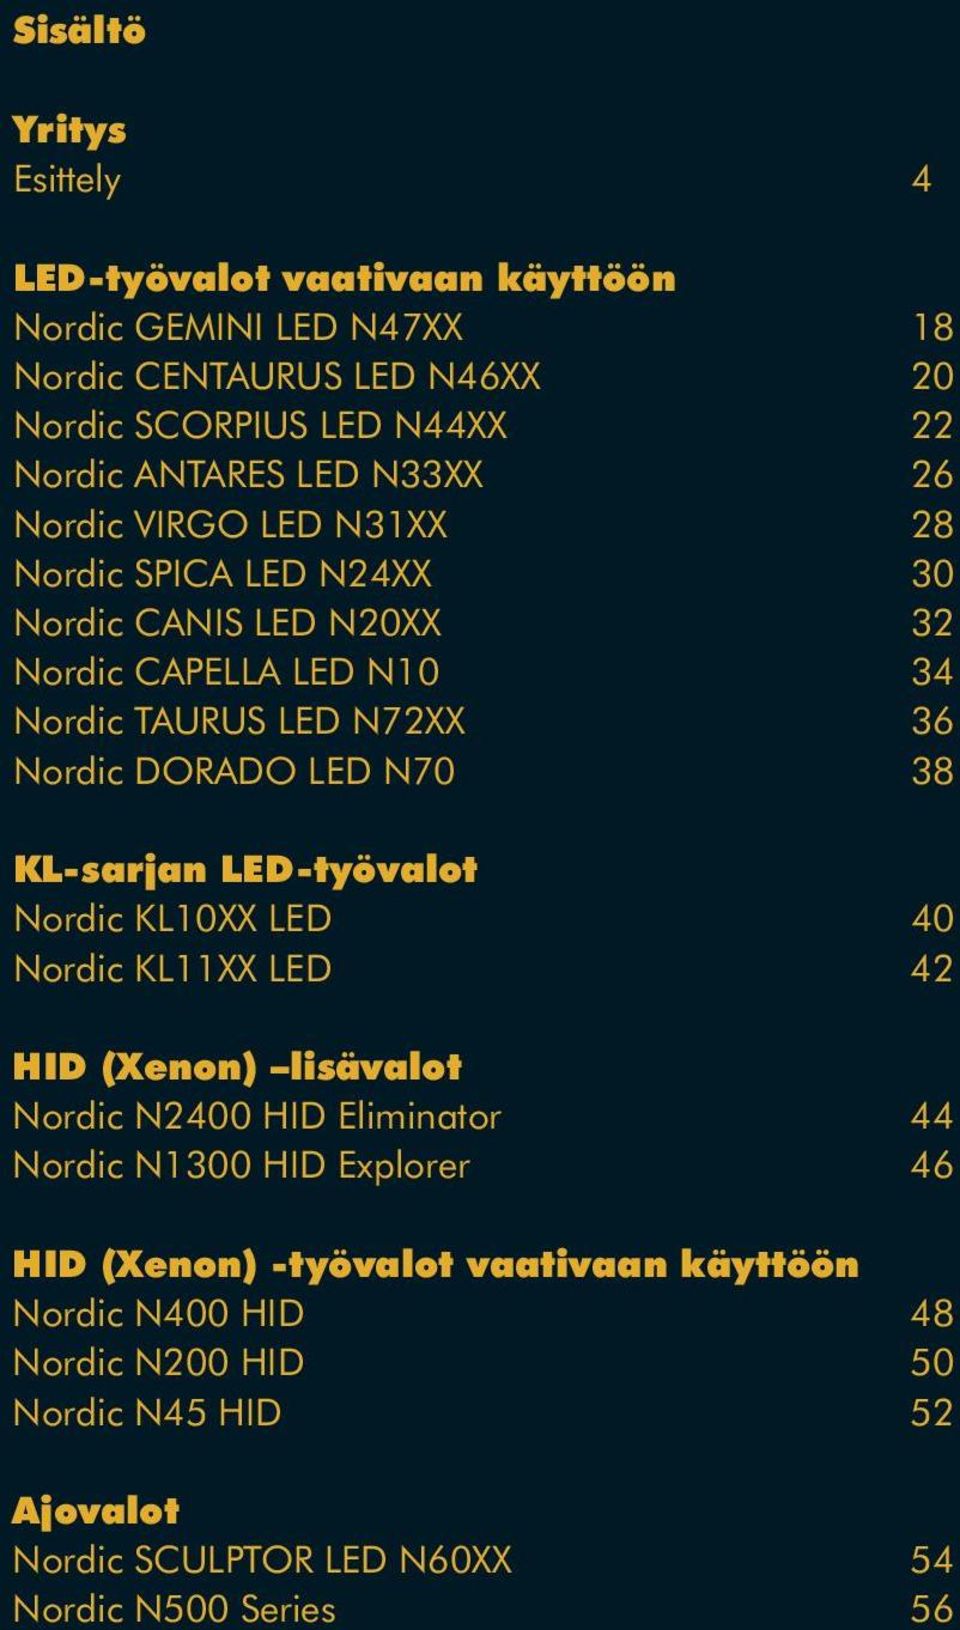 Nordic DORADO LED N70 38 KL-sarjan LED-työvalot Nordic KL10XX LED 40 Nordic KL11XX LED 42 HID (Xenon) lisävalot Nordic N2400 HID Eliminator 44 Nordic N1300